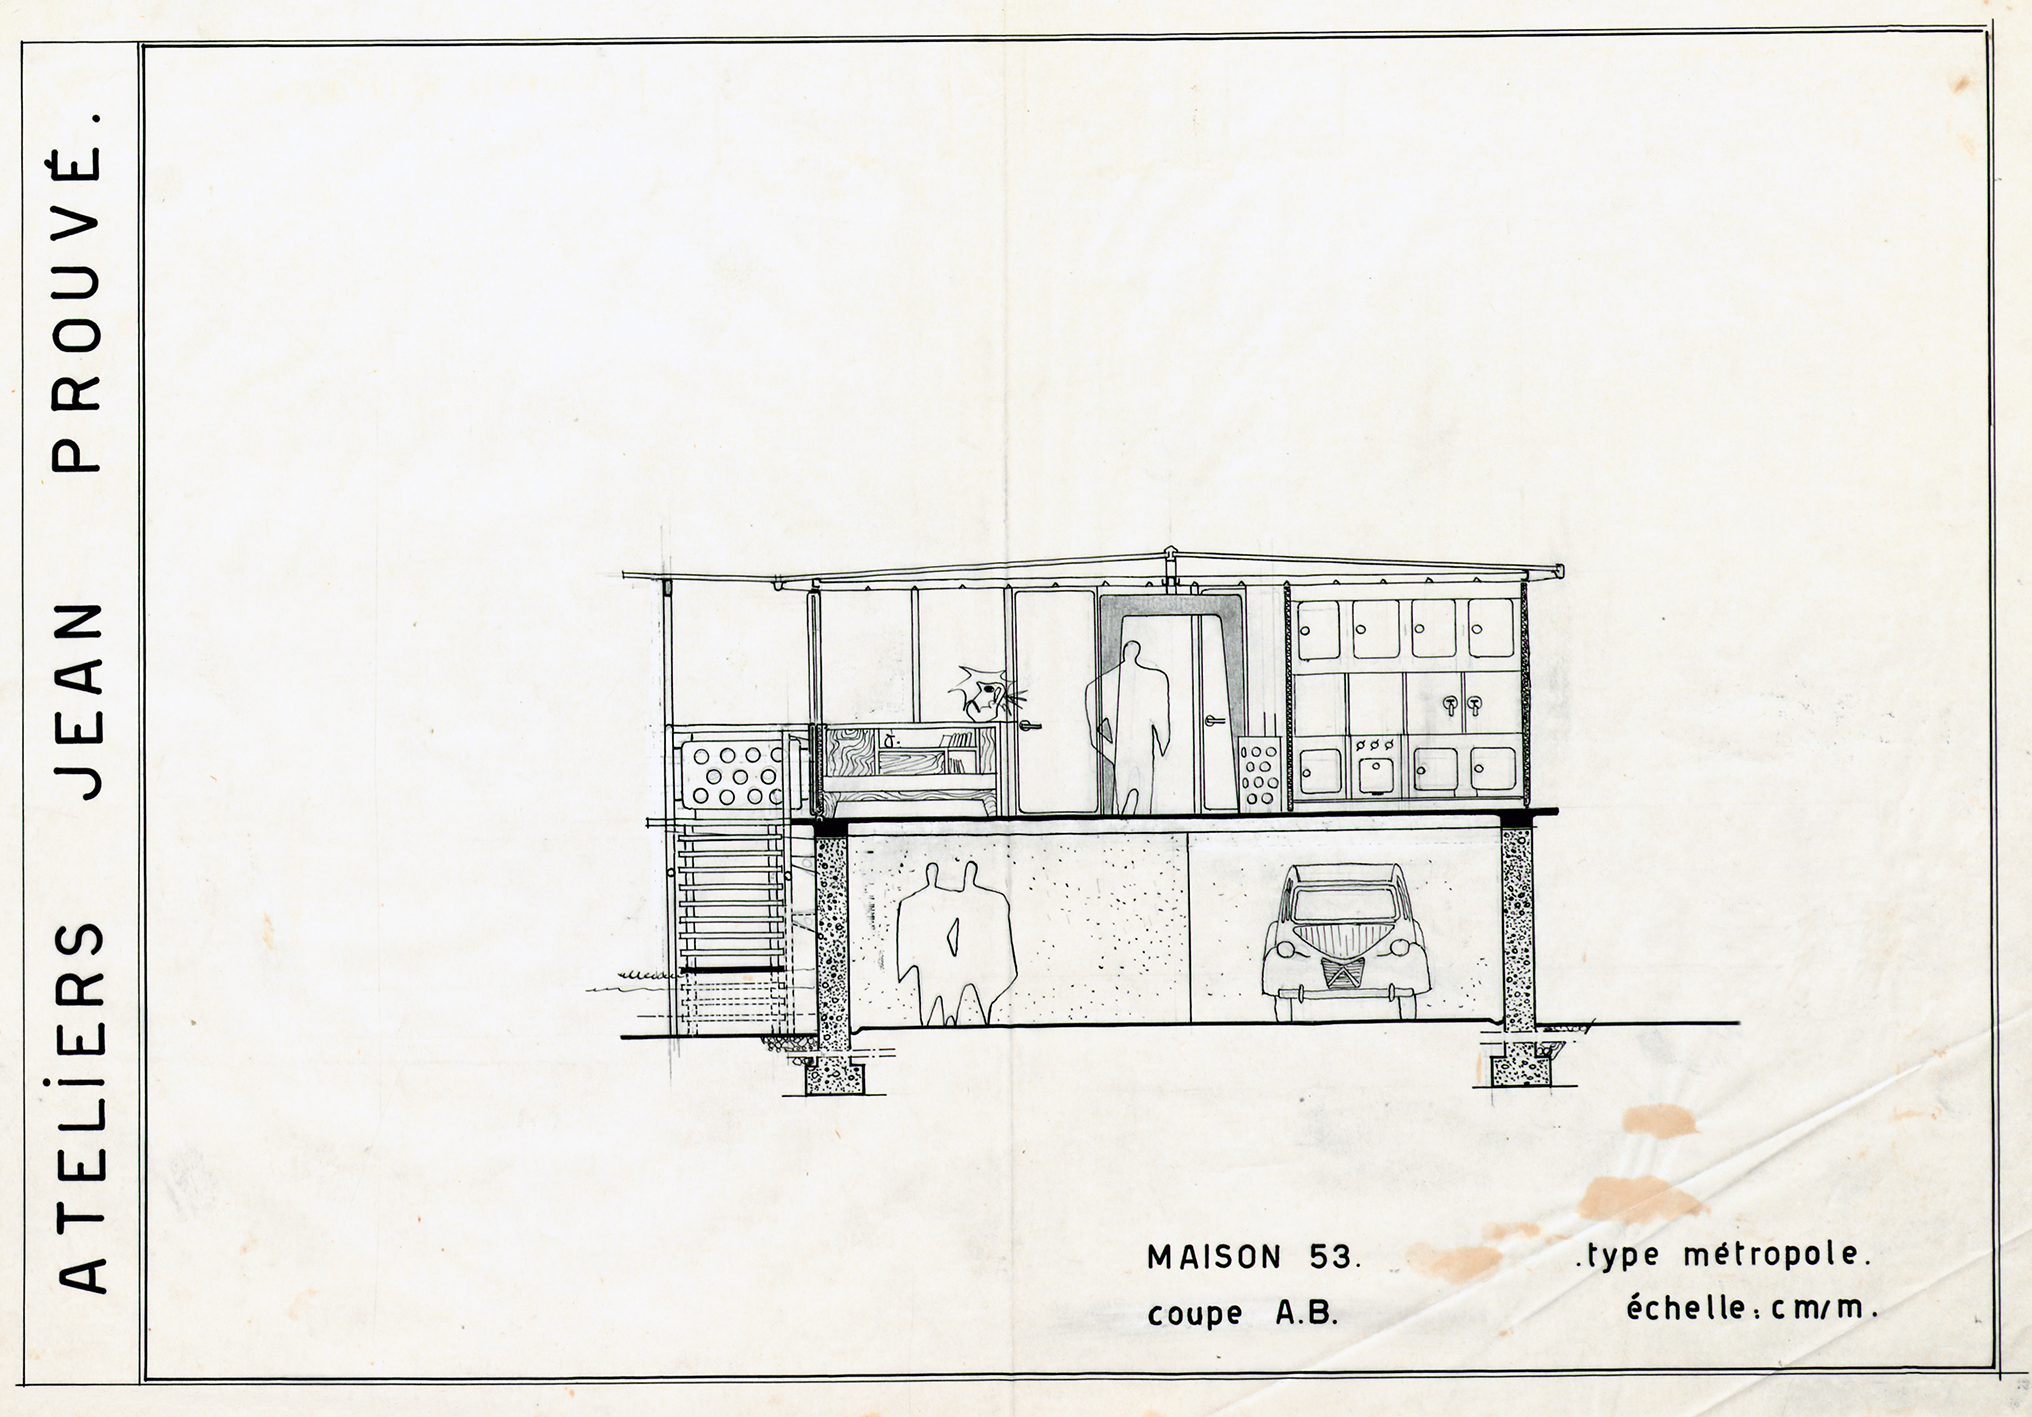 Ateliers Jean Prouvé, « Maison 53, type Métropole, coupe A.B. ». Plan n° 180.250, 1953.